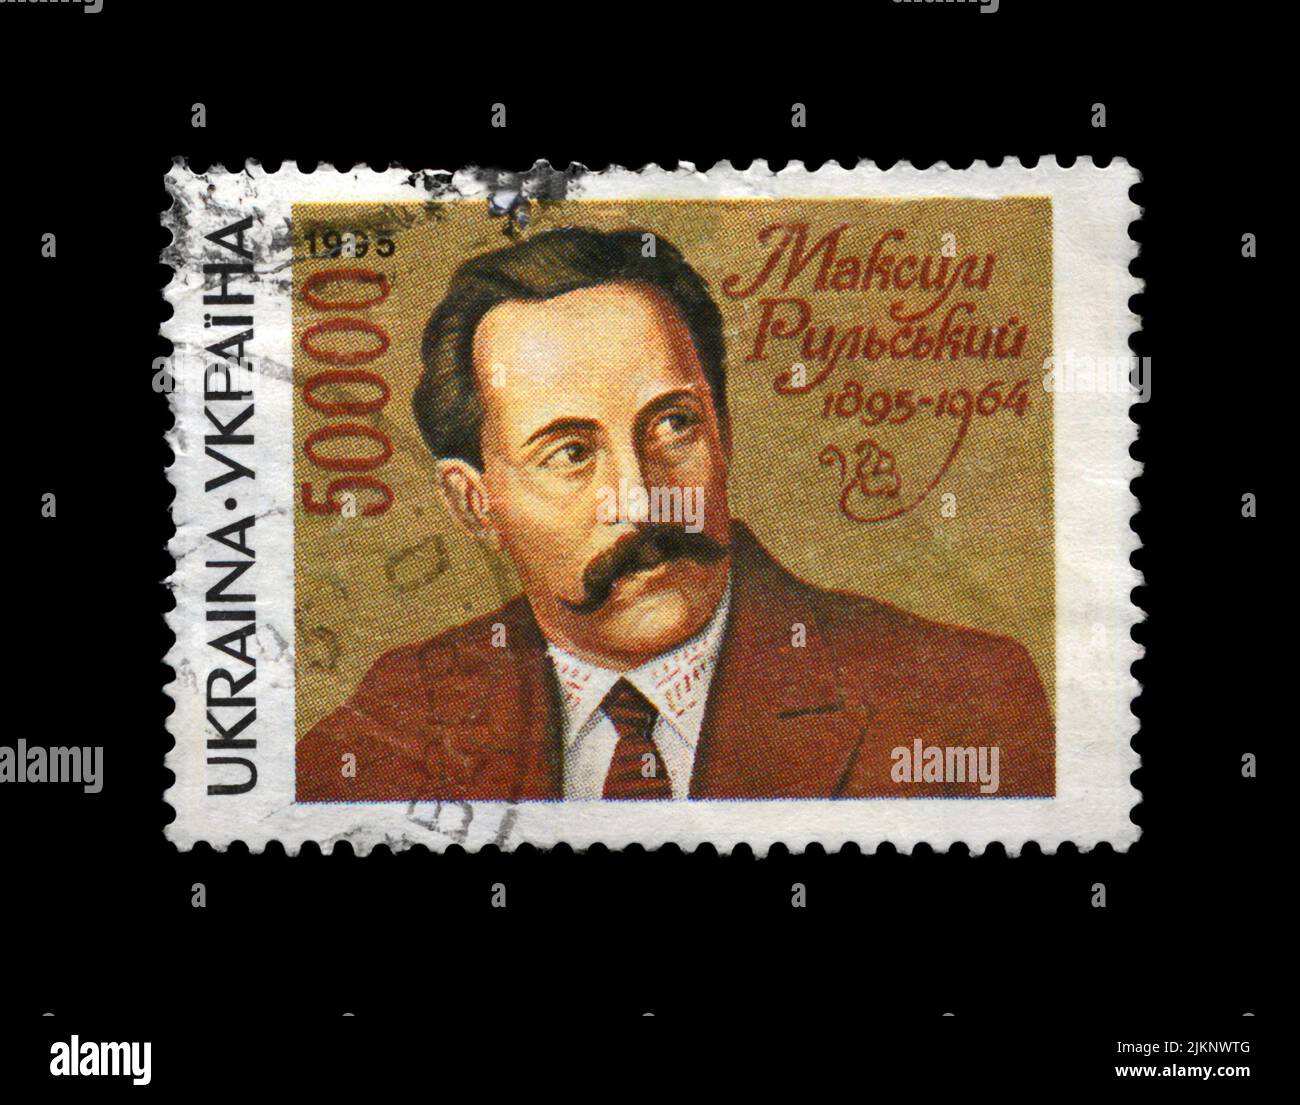 Maksym Rylskyi (1895-1964), famoso poeta ucraino, scrittore, circa 1995. Cancellato timbro posal stampato in Ucraina isolato su sfondo nero. Foto Stock